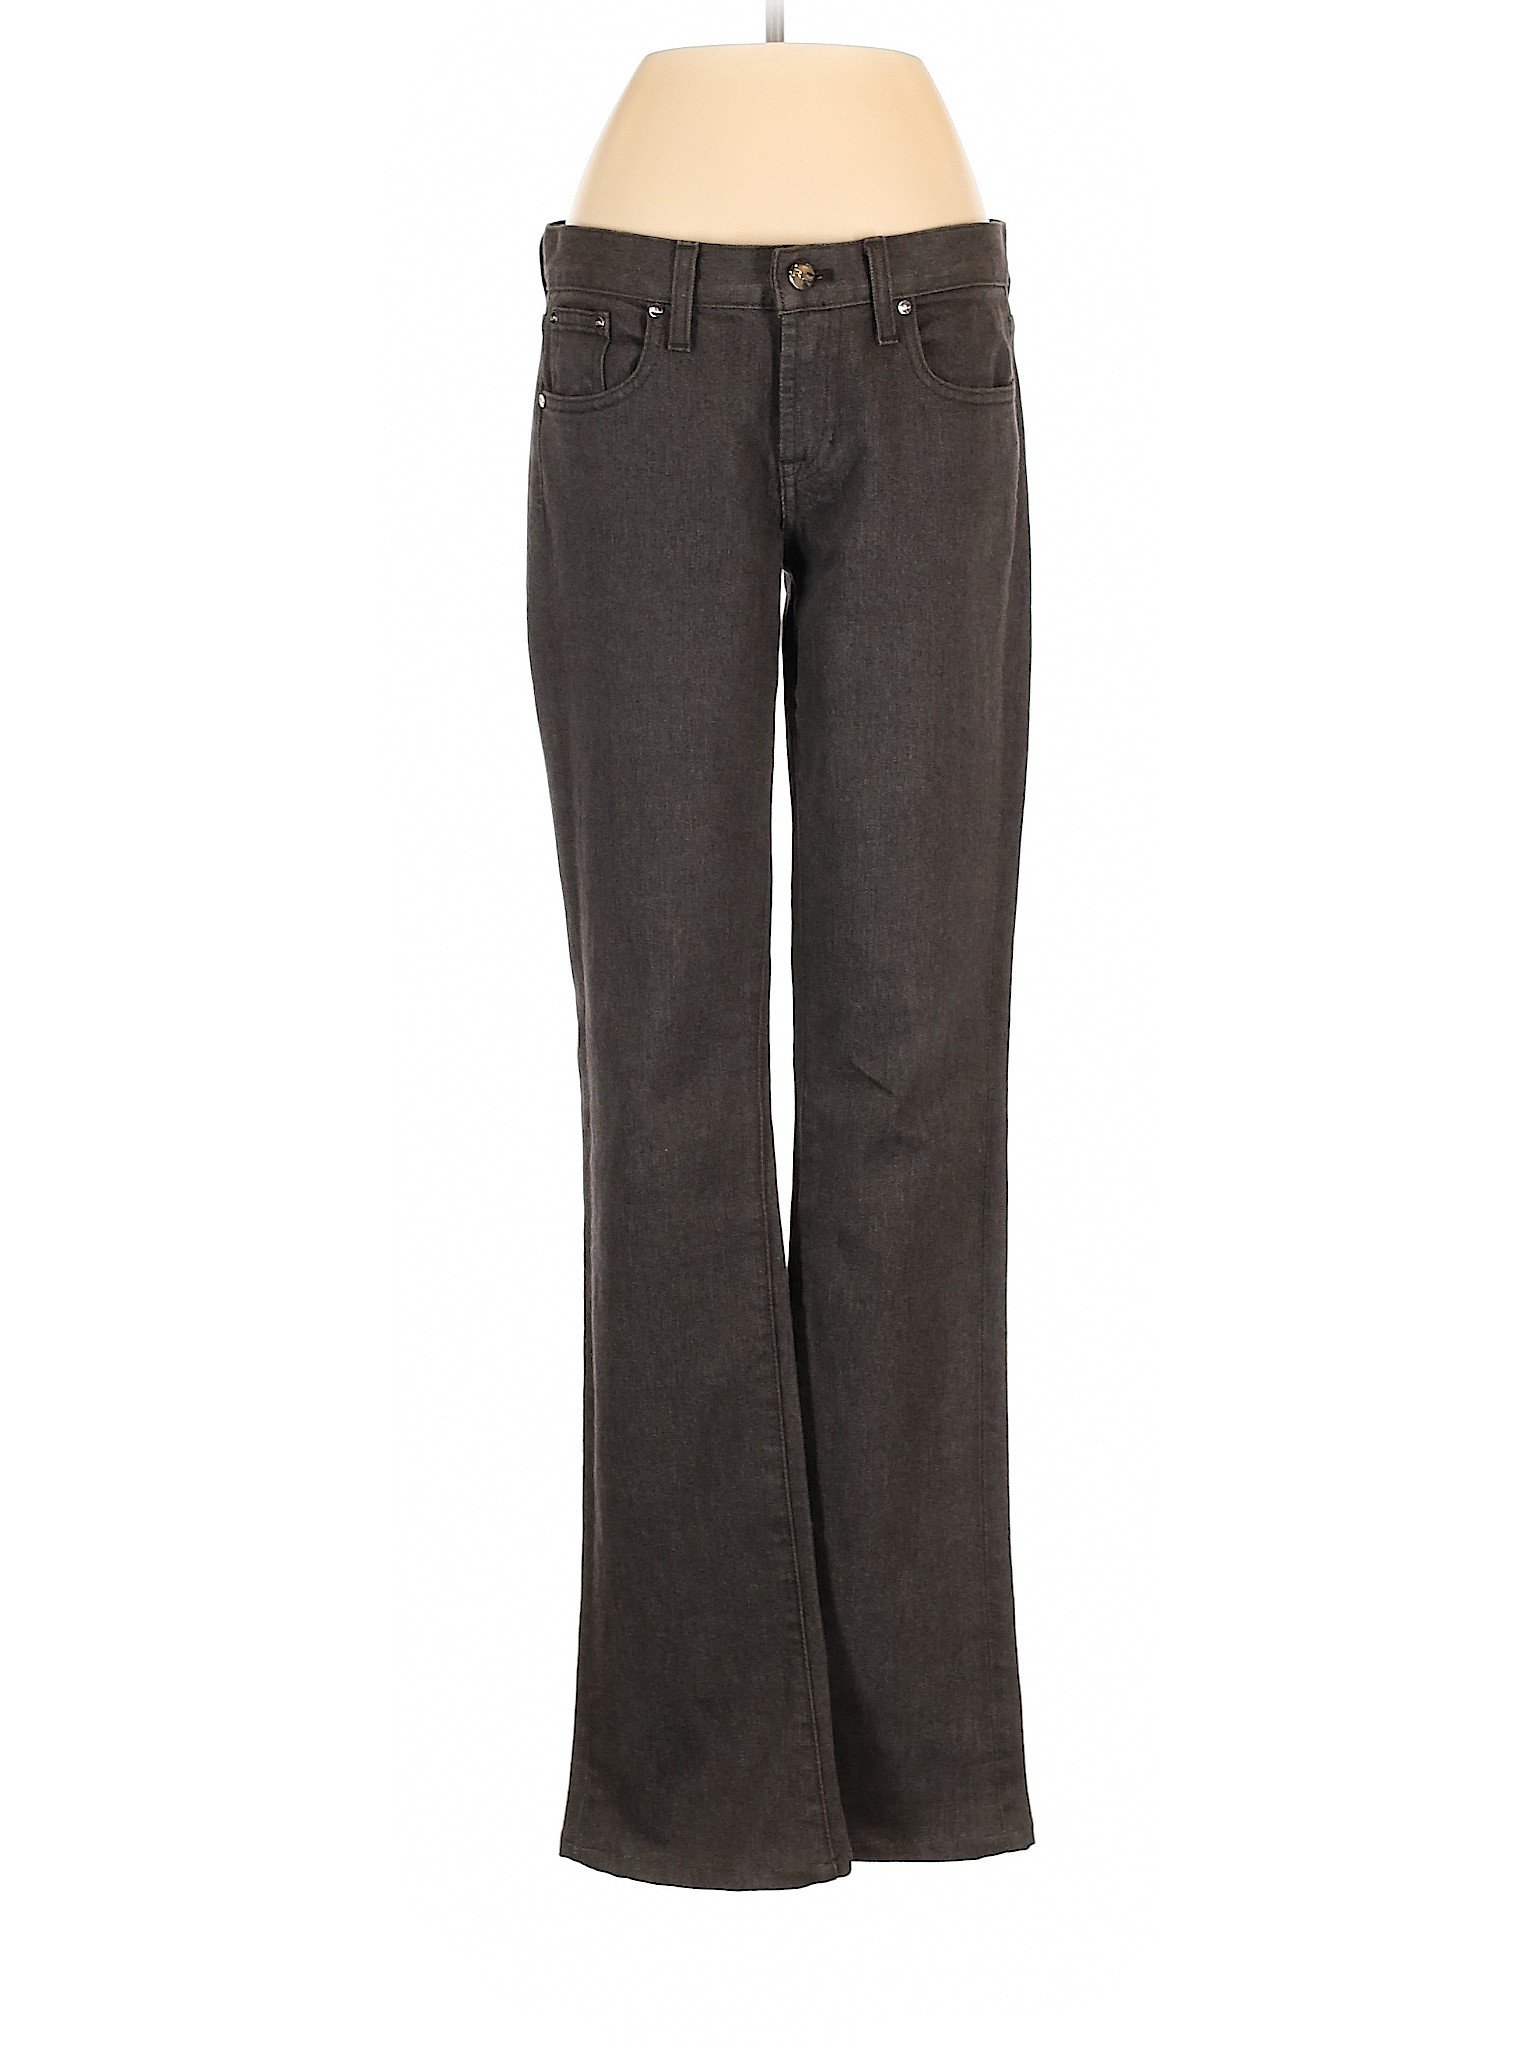 Ralph Lauren Women Gray Jeans 26W | eBay